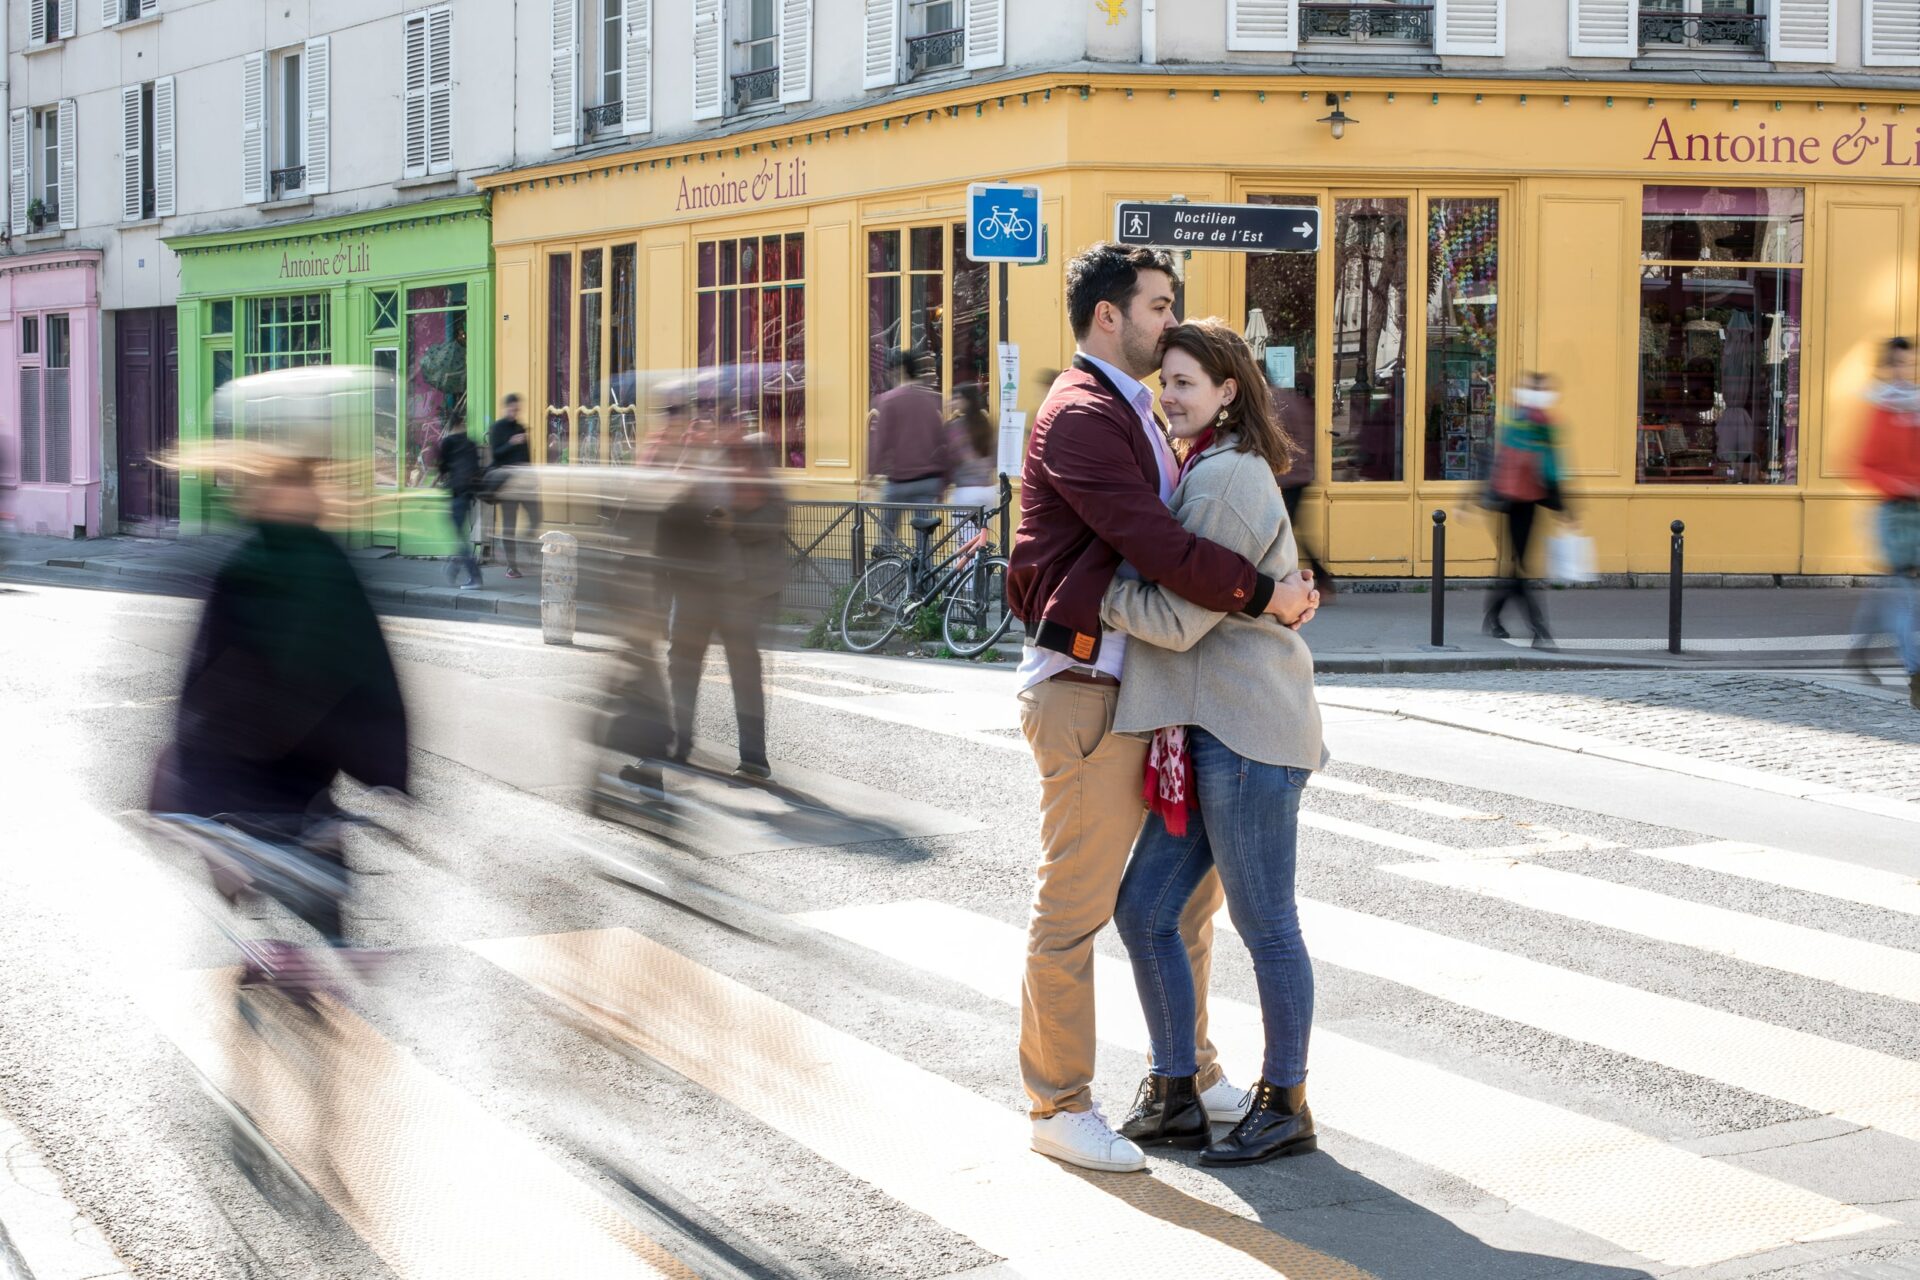 Au coeur de Paris, boutiques en couleur dans le fond, jaune, verte, rose, un couple serré l'un contre l'autre avec autour des fantômes de personnes qui filent